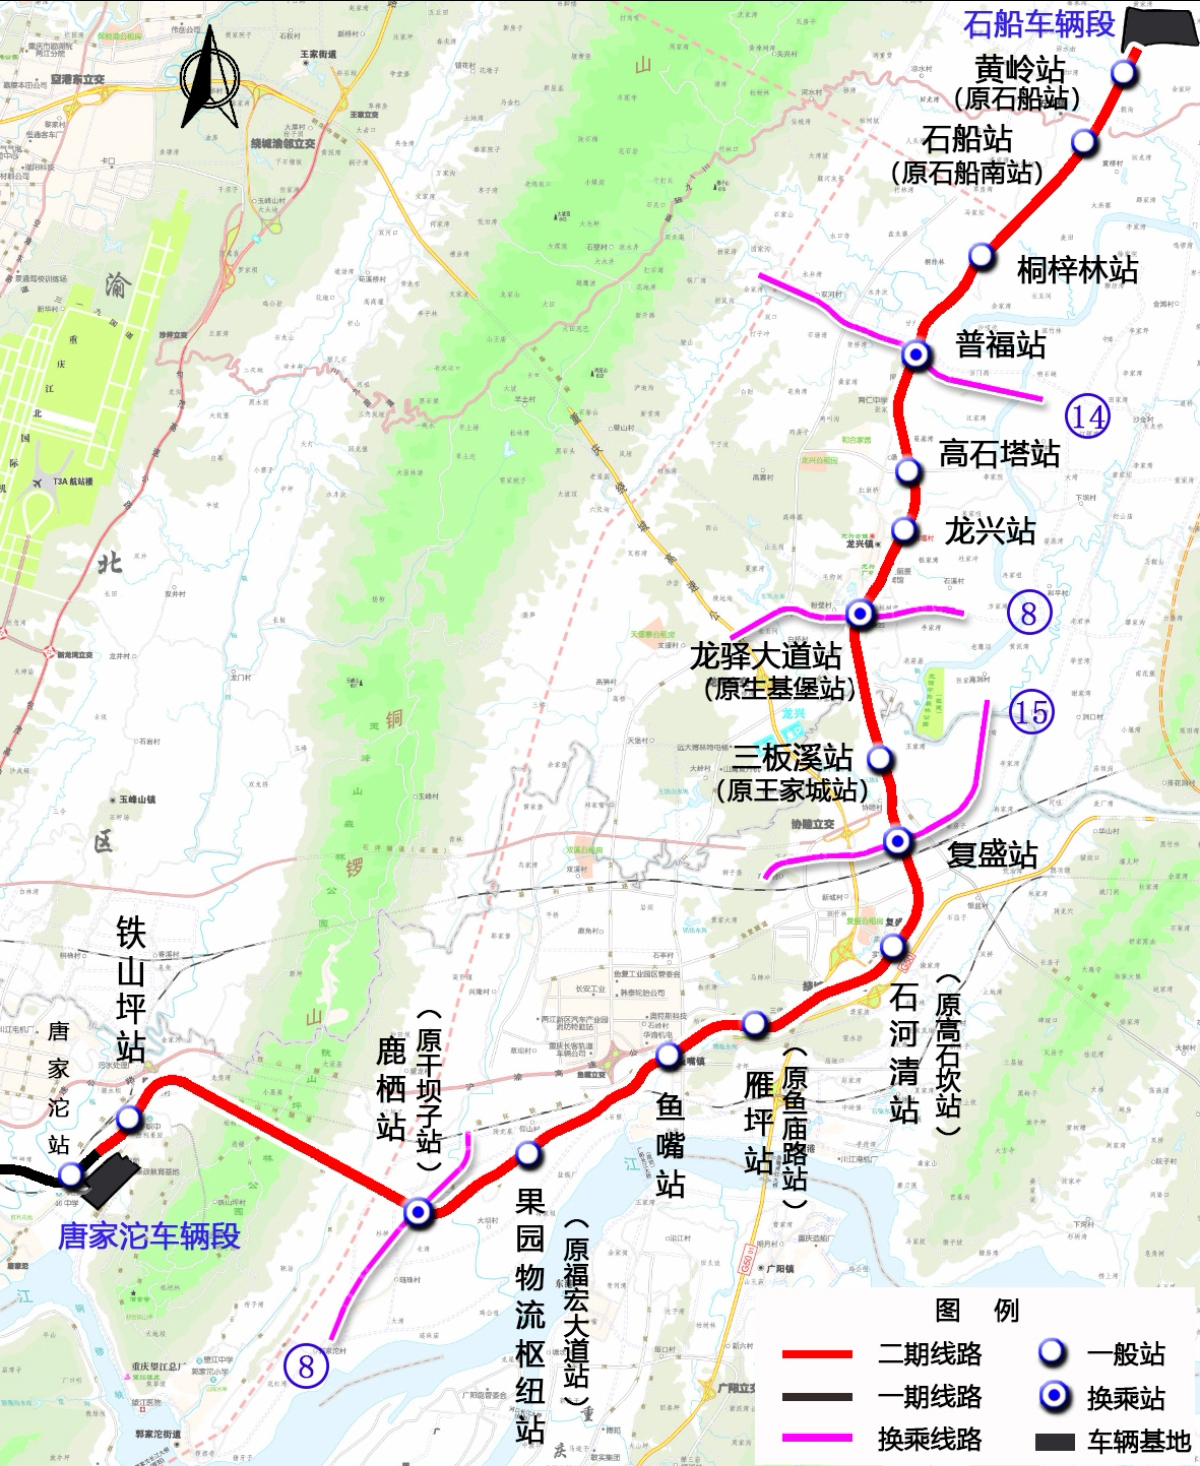 重庆轨道4号线二期工程顺利通过竣工验收